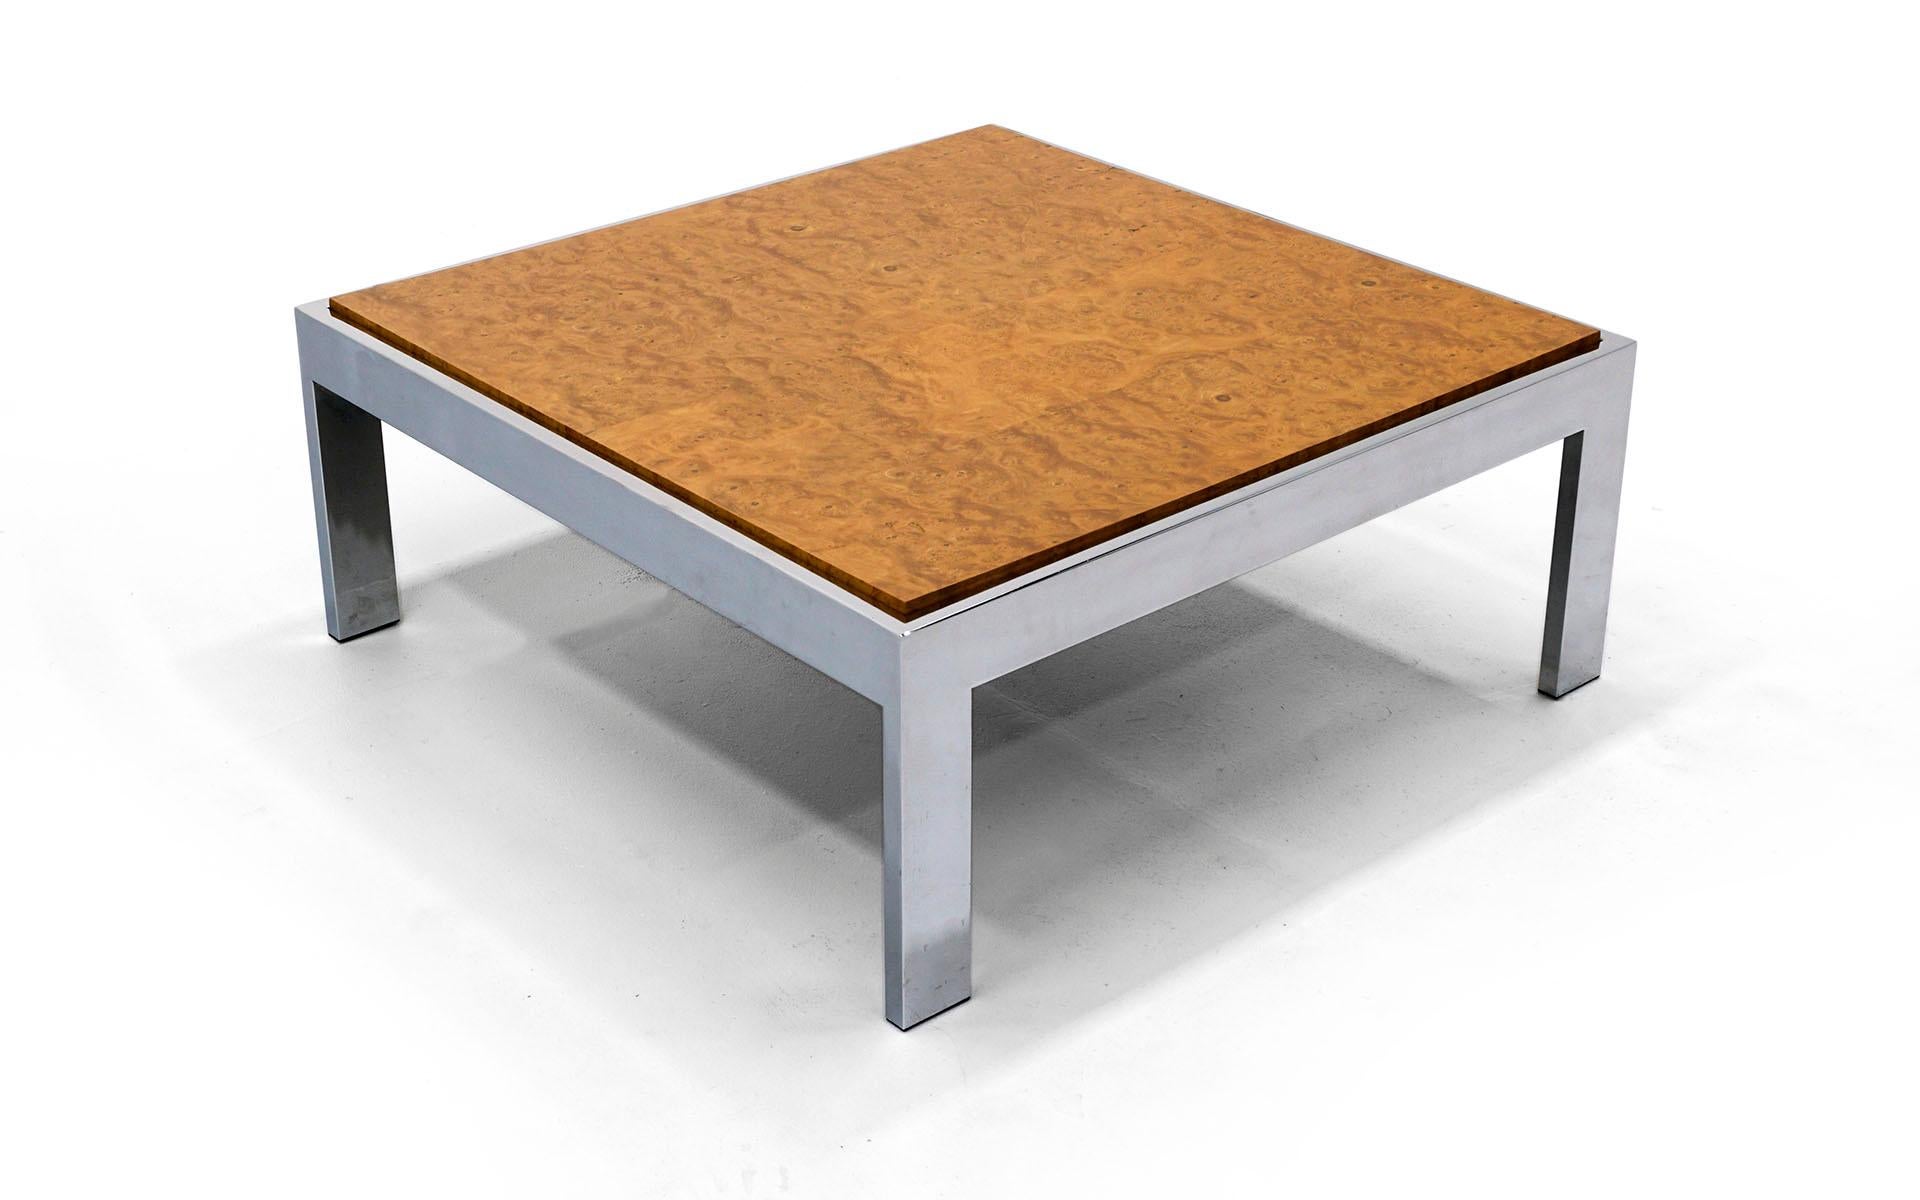 Table de cocktail avec plateau en ronce d'olivier et solide structure chromée. Design contemporain élégant et moderne. Intemporel.